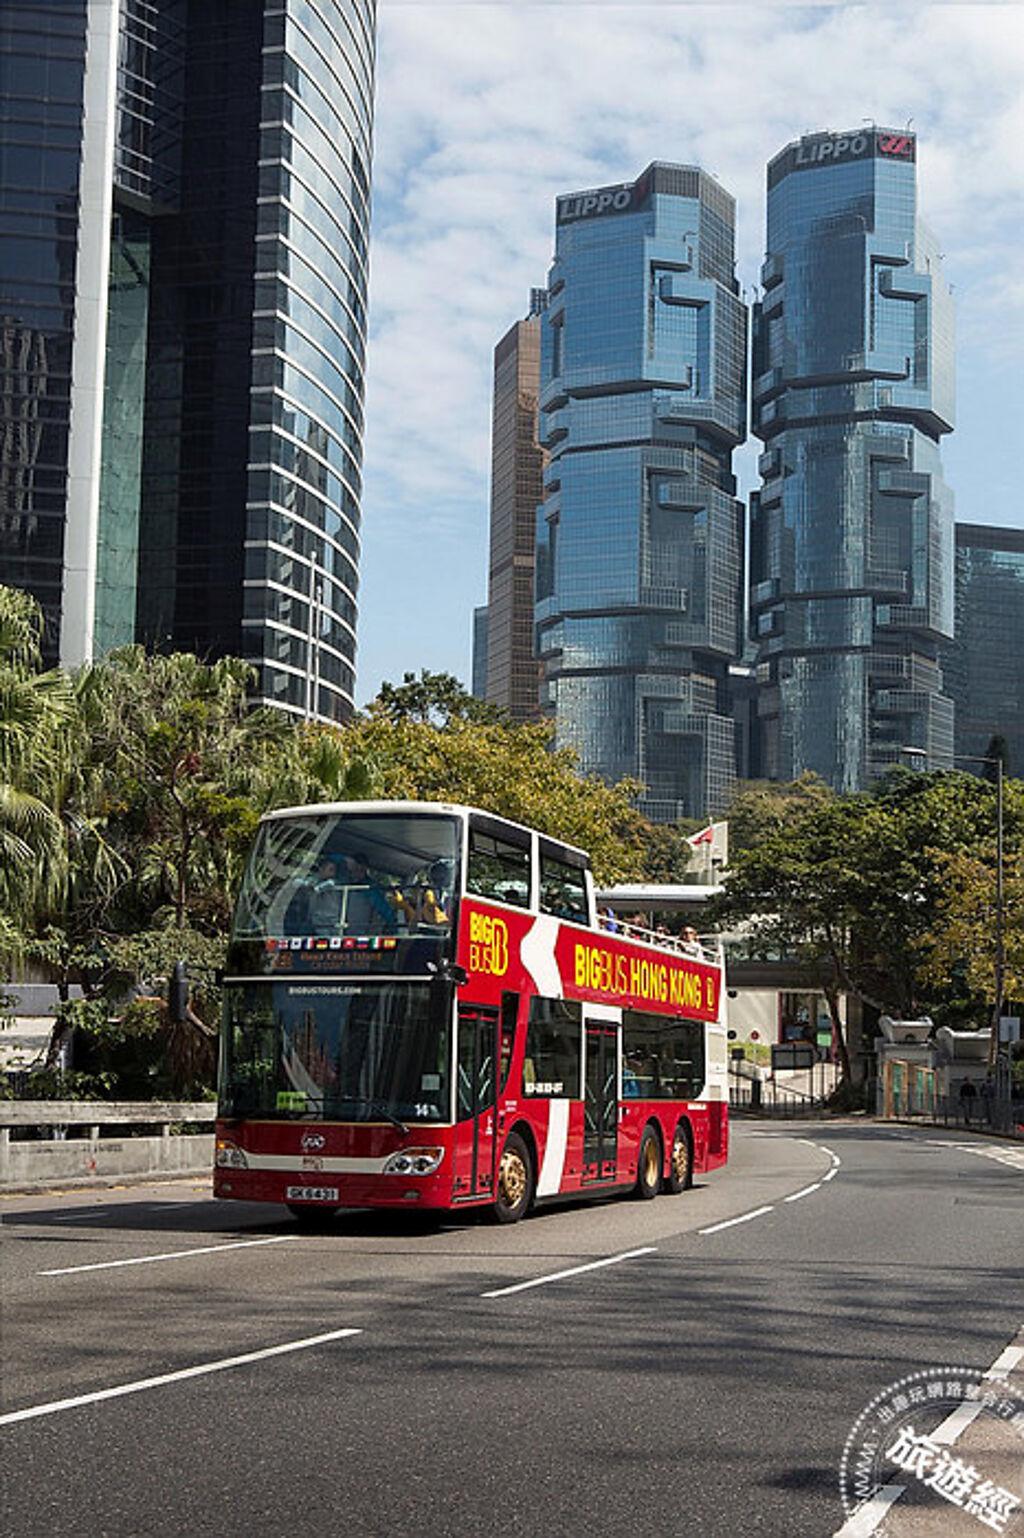 Big Bus Tours 敞篷雙層巴士遊，讓探索城市更方便。